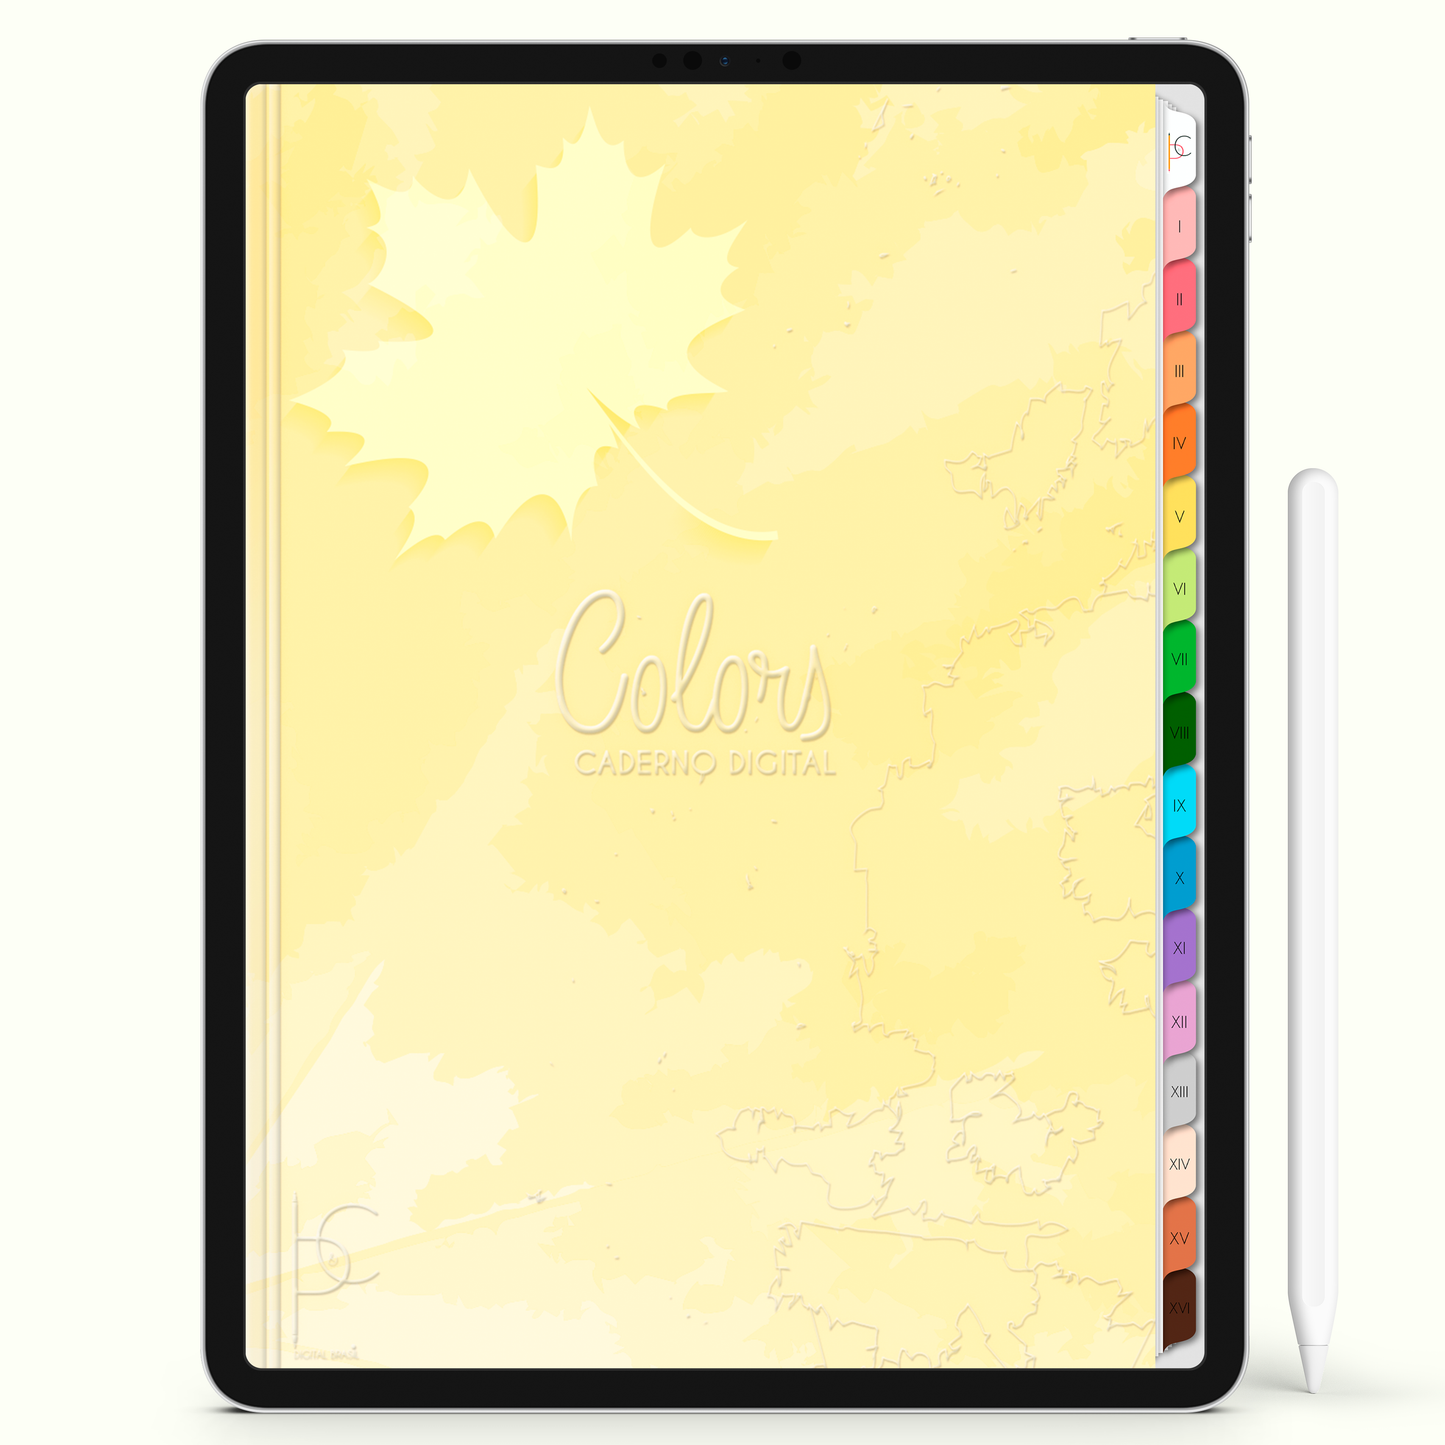 Caderno Digital Colors Mundo dos Estudos 16 Matérias • Para iPad e Tablet Android • Download instantâneo • Sustentável